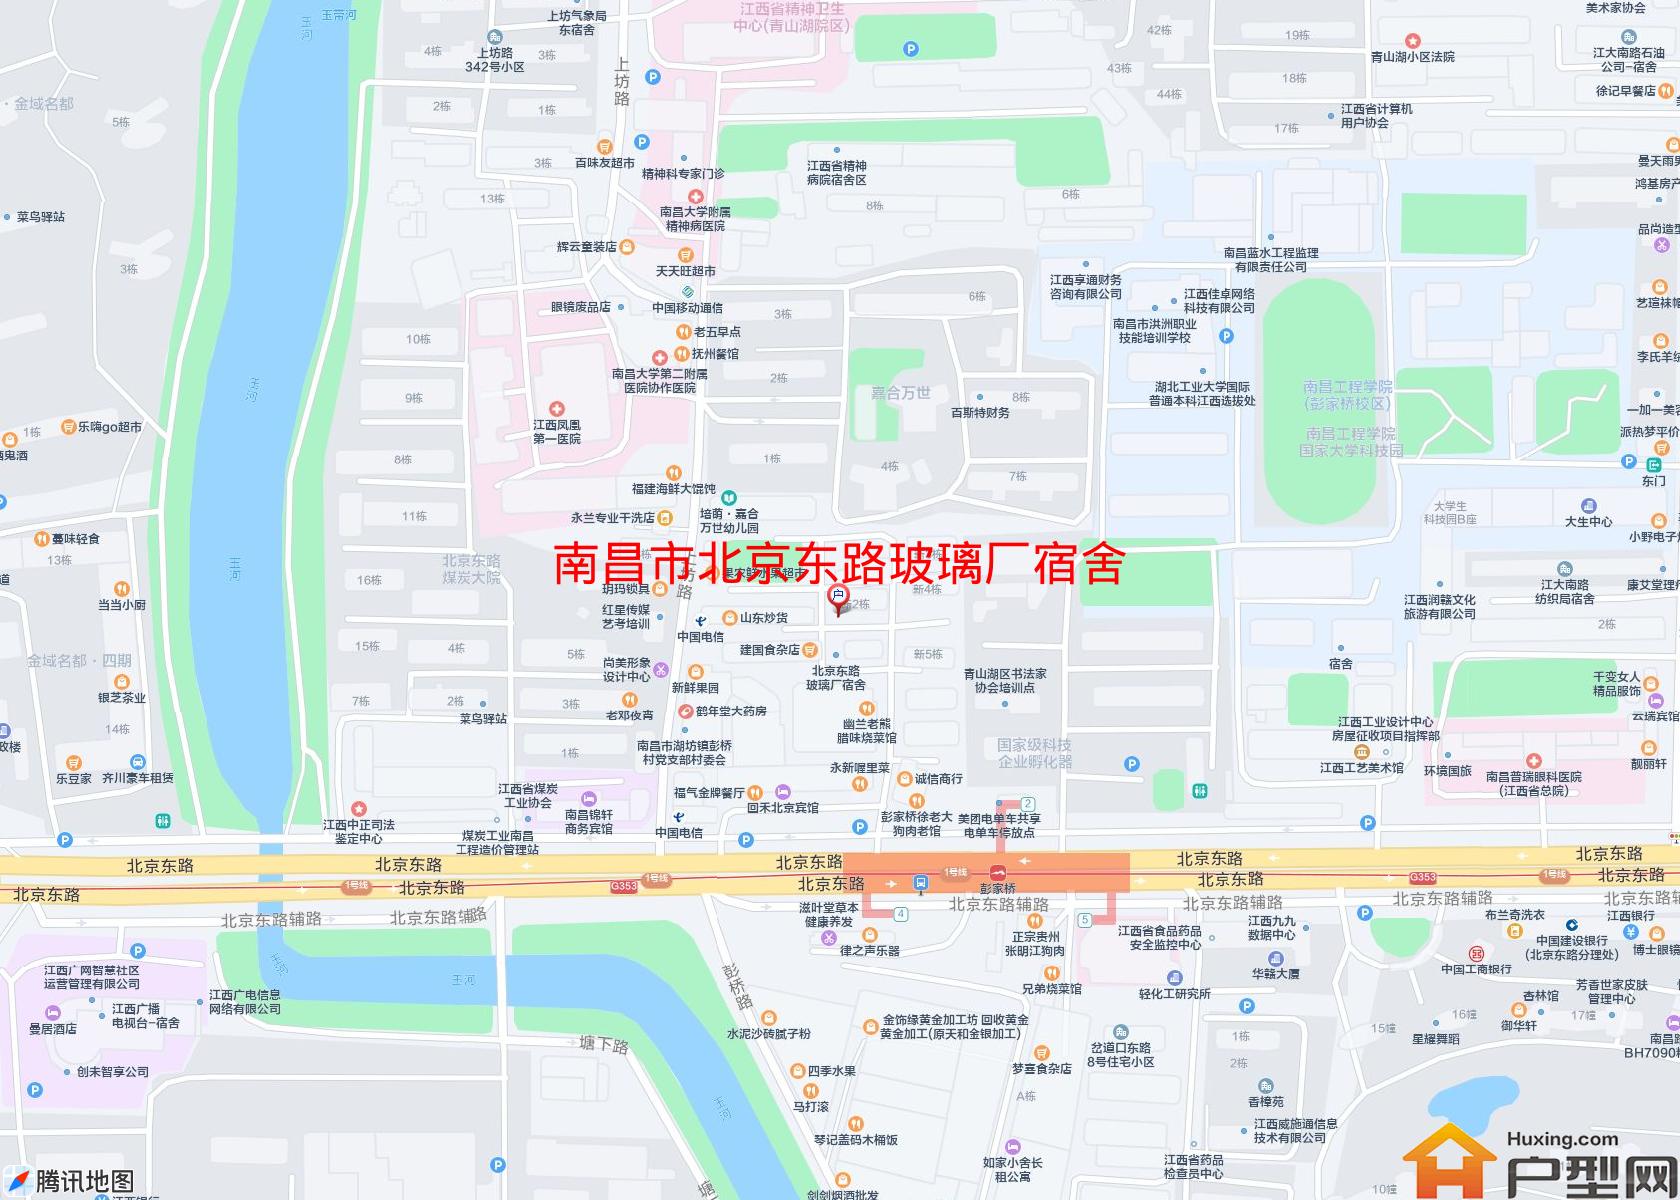 北京东路玻璃厂宿舍小区 - 户型网